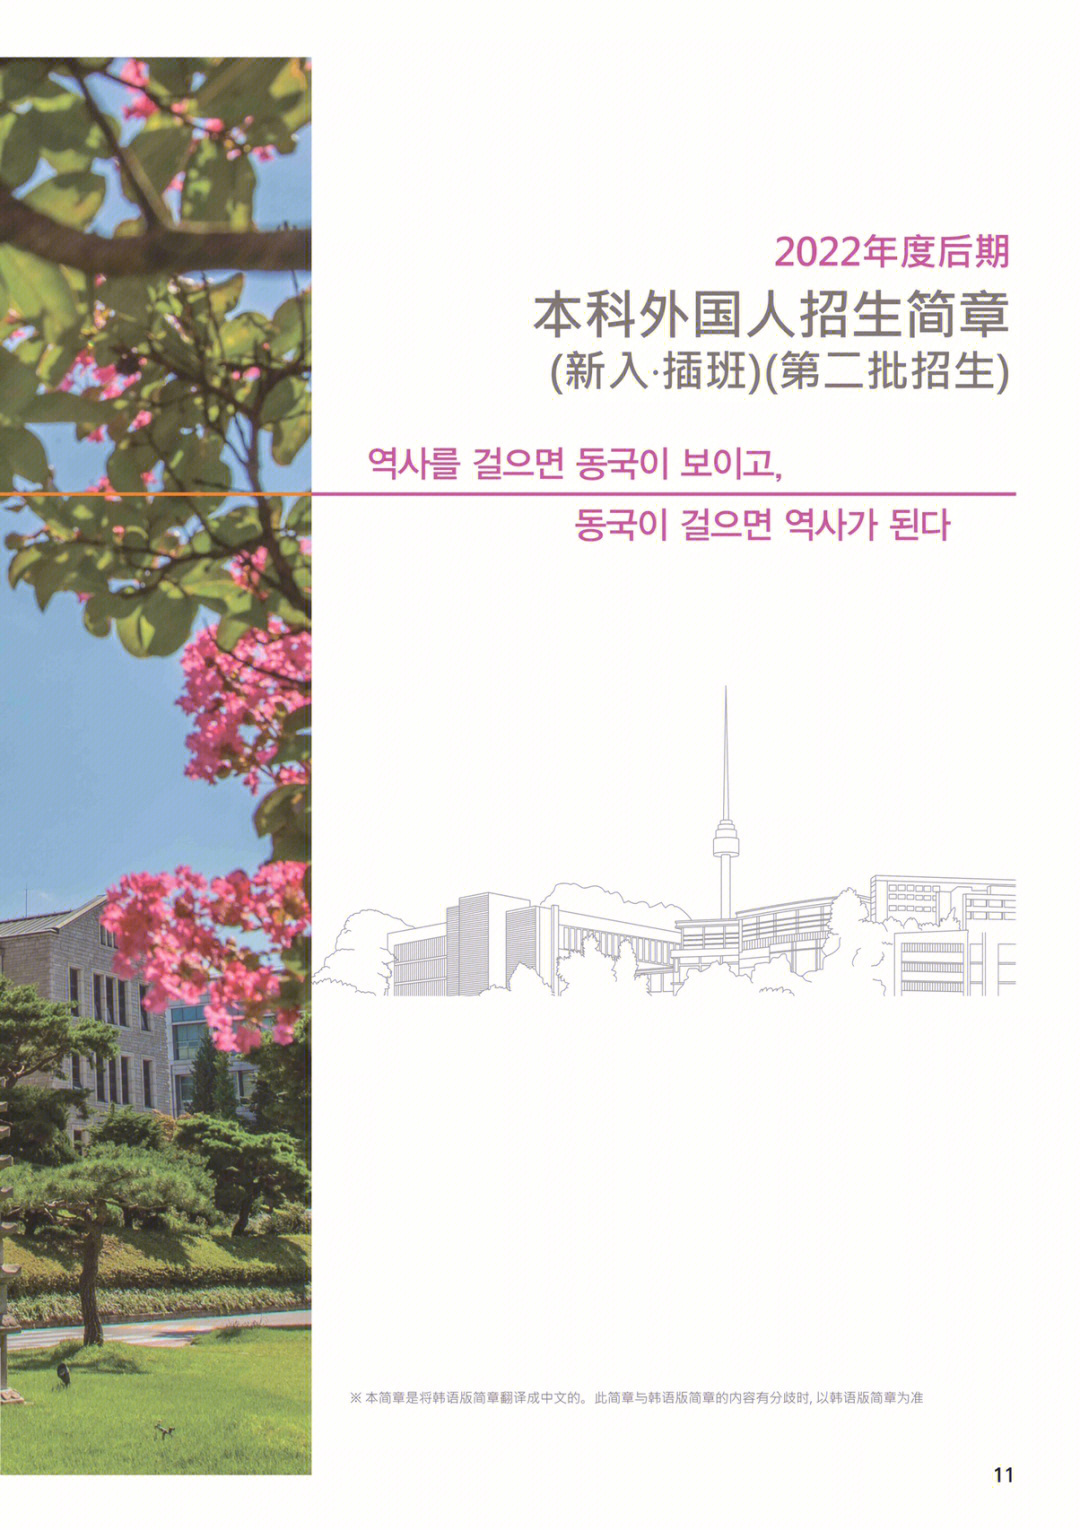 世宗学堂韩国语中级1以上[c] 东国大学韩国语教育院正规课程4